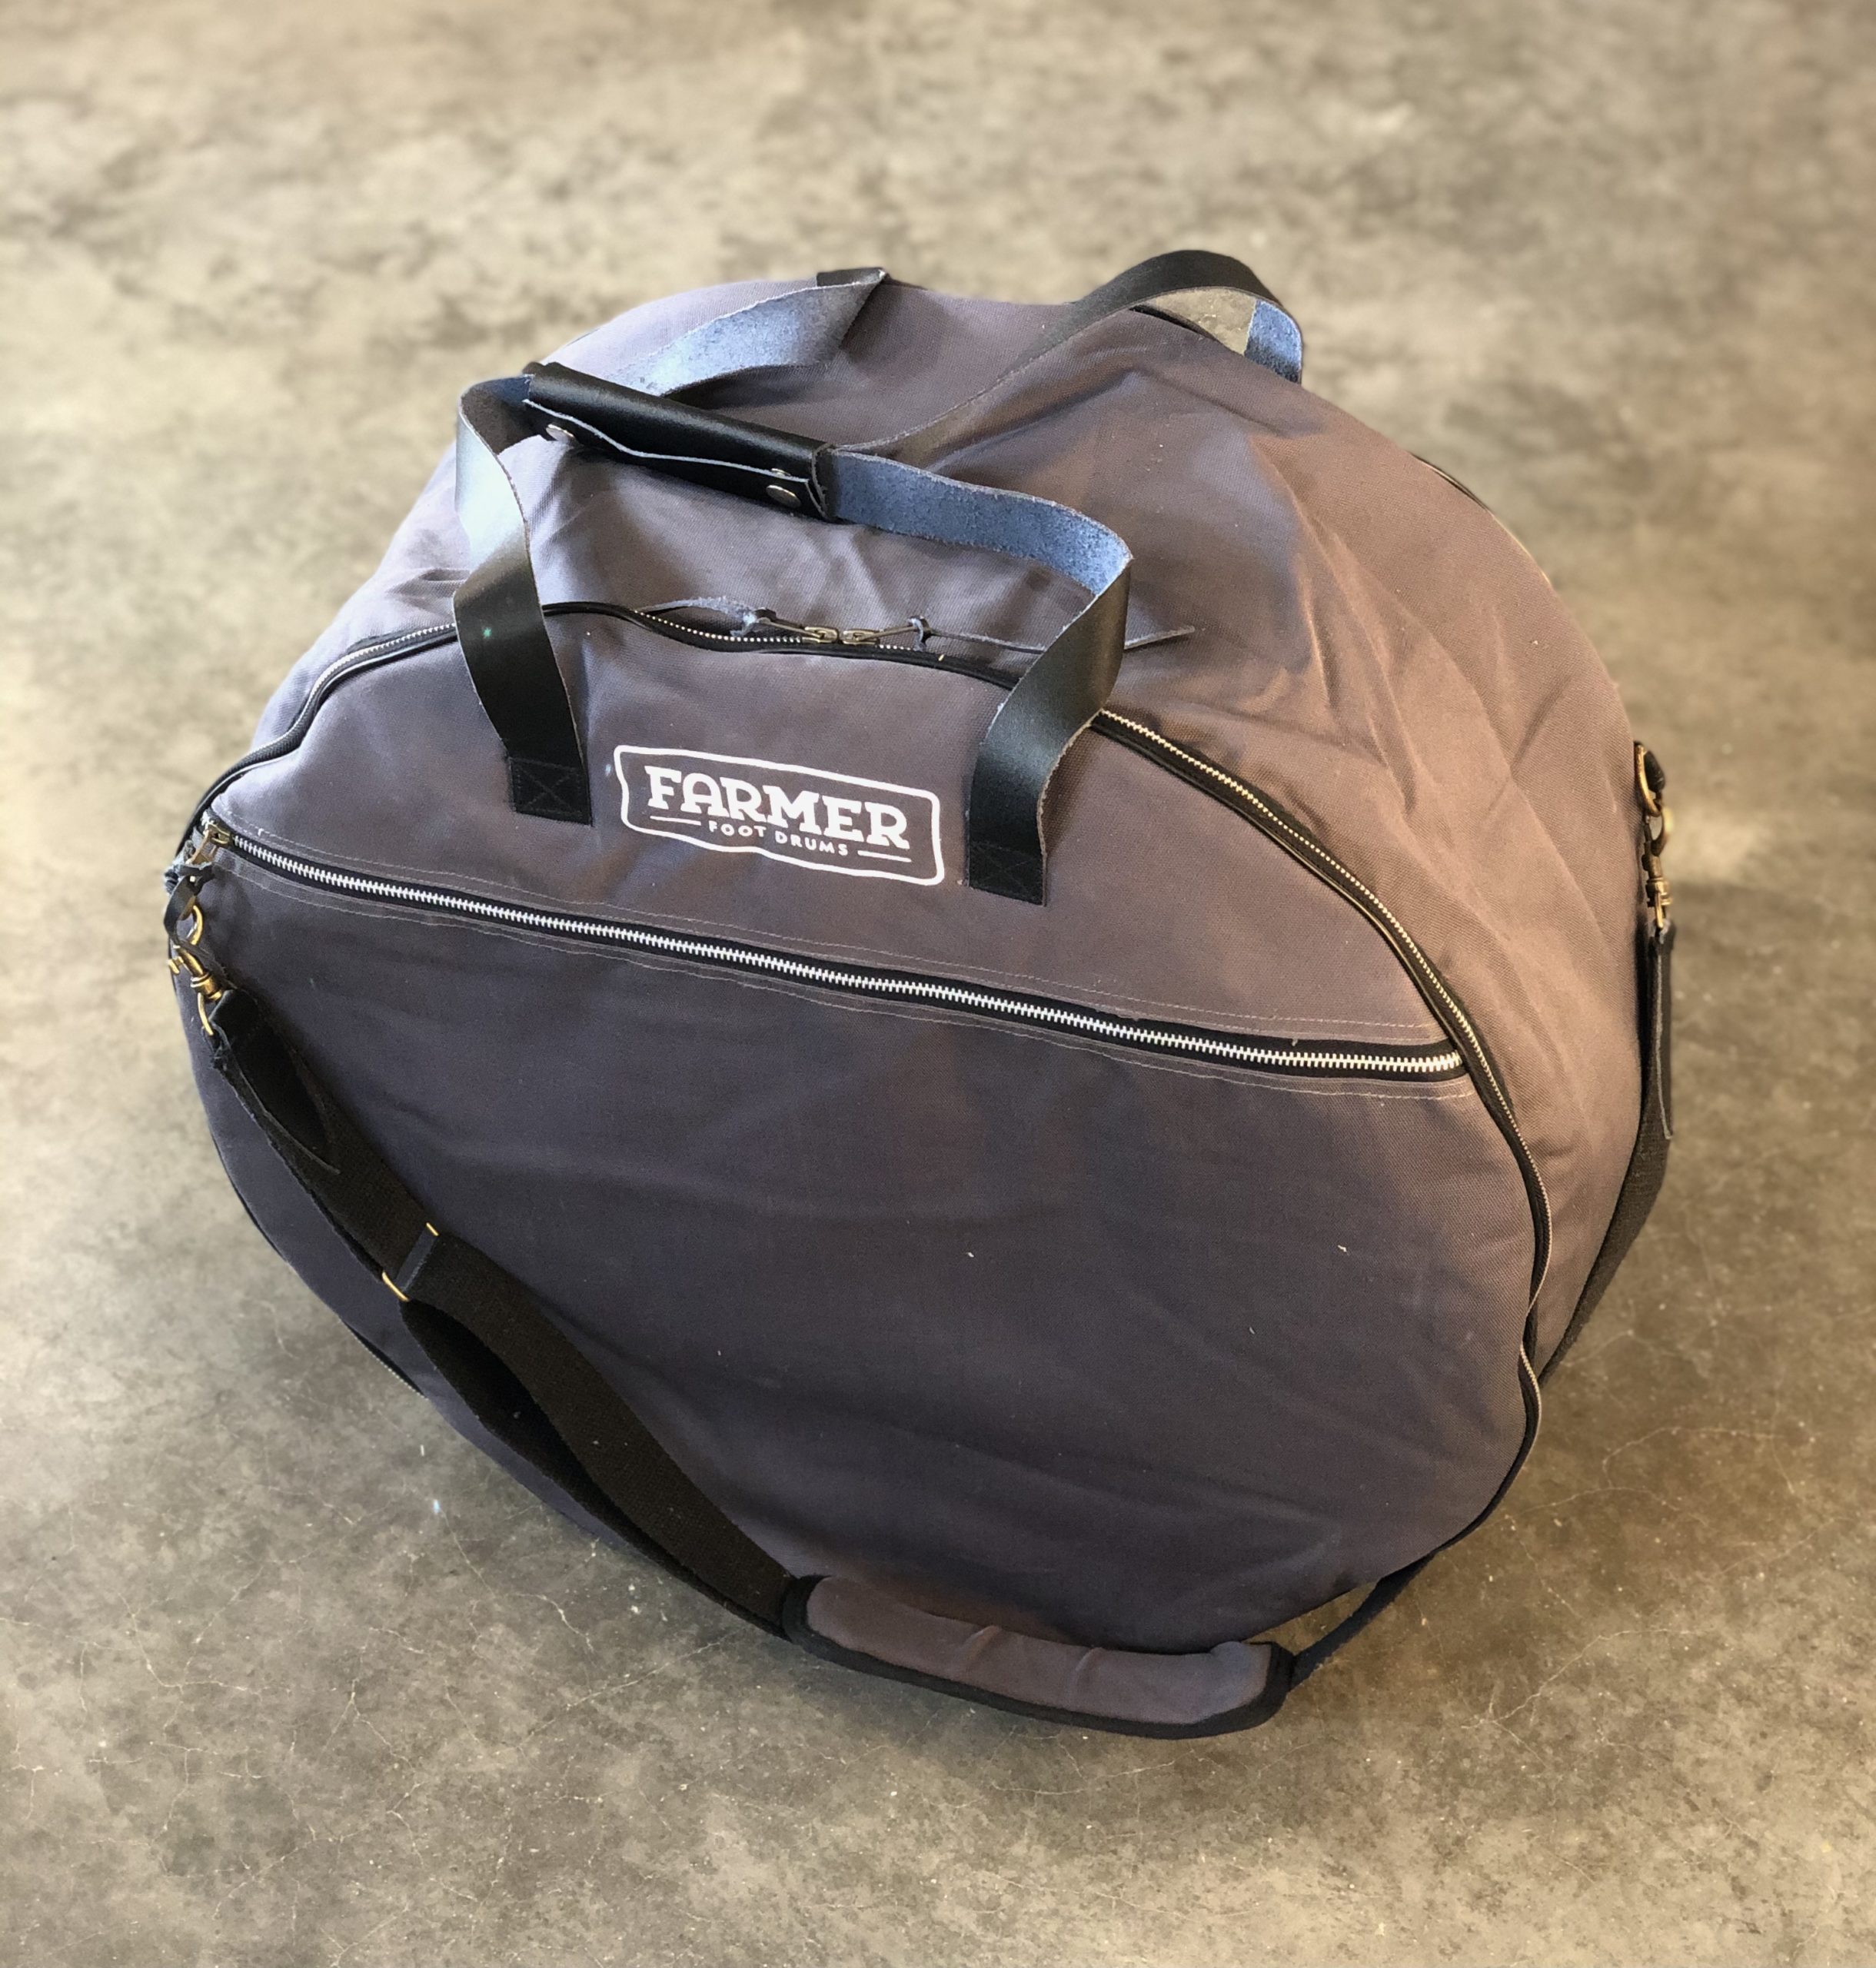 Xtreme Fusion Drum Bag Set - Comprises; 20